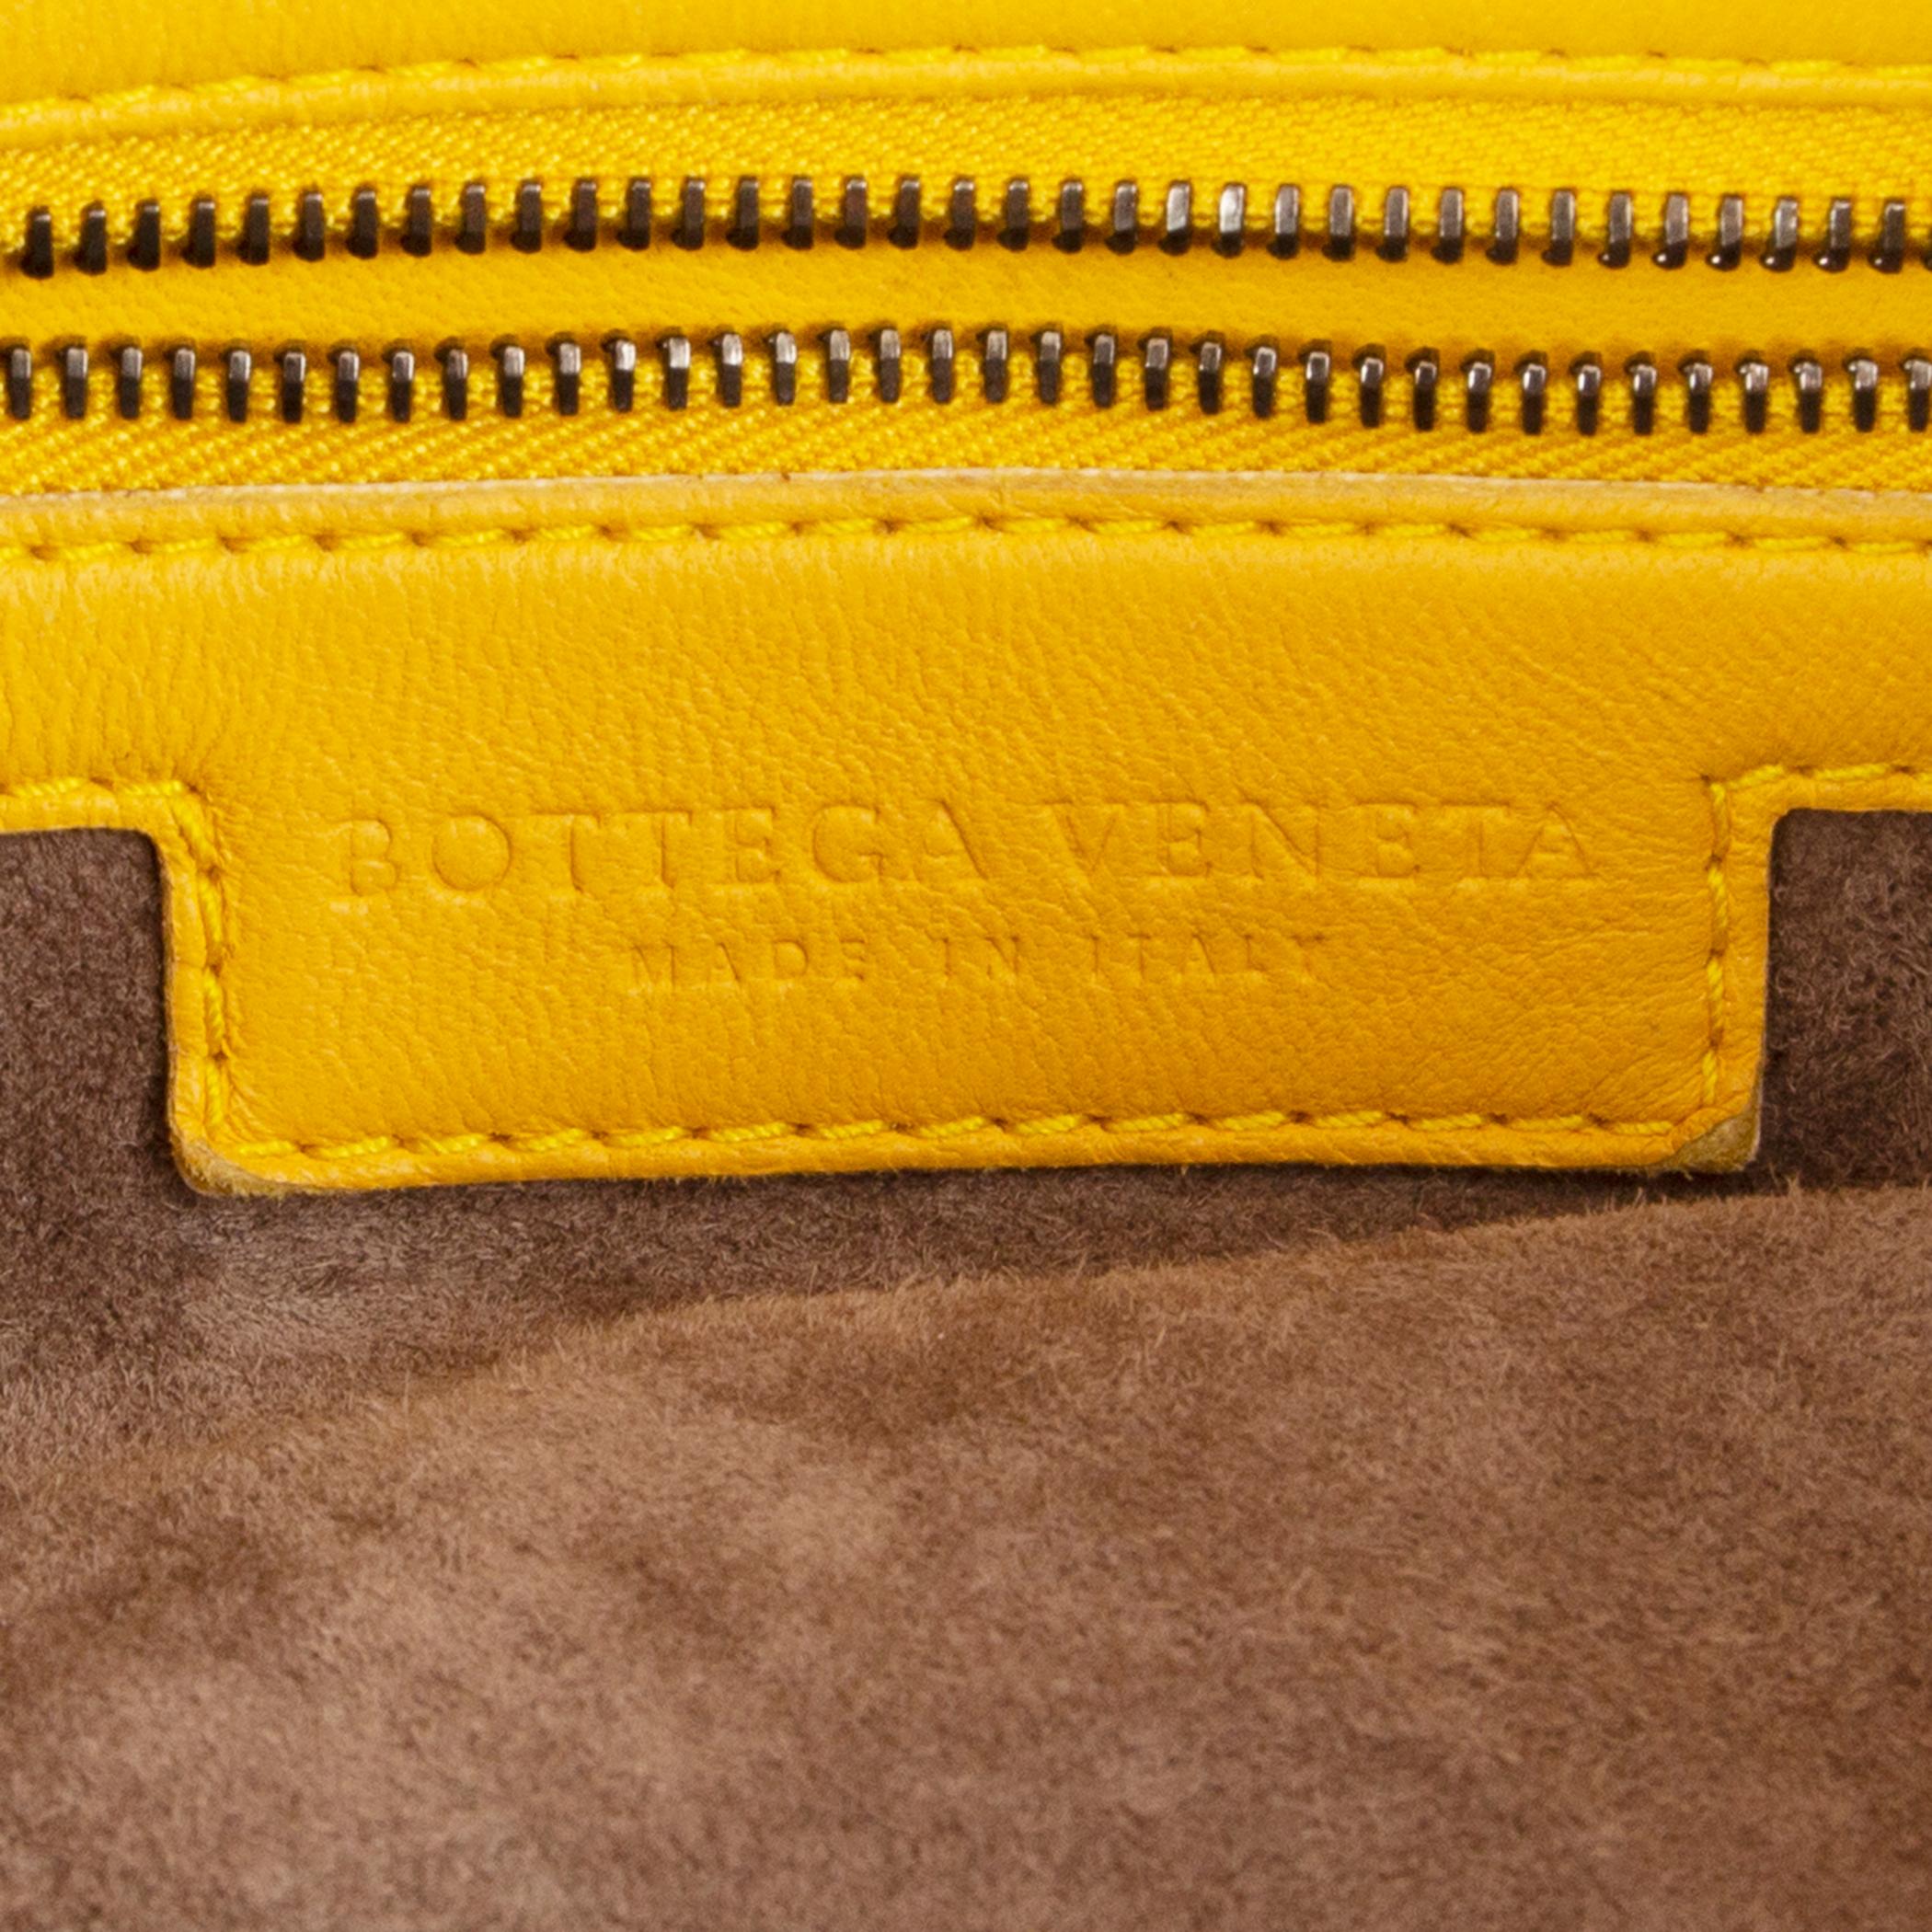 Women's BOTTEGA VENETA yellow INTRECCIATO BELLY VENETA MEDIUM Hobo Shoulder Bag